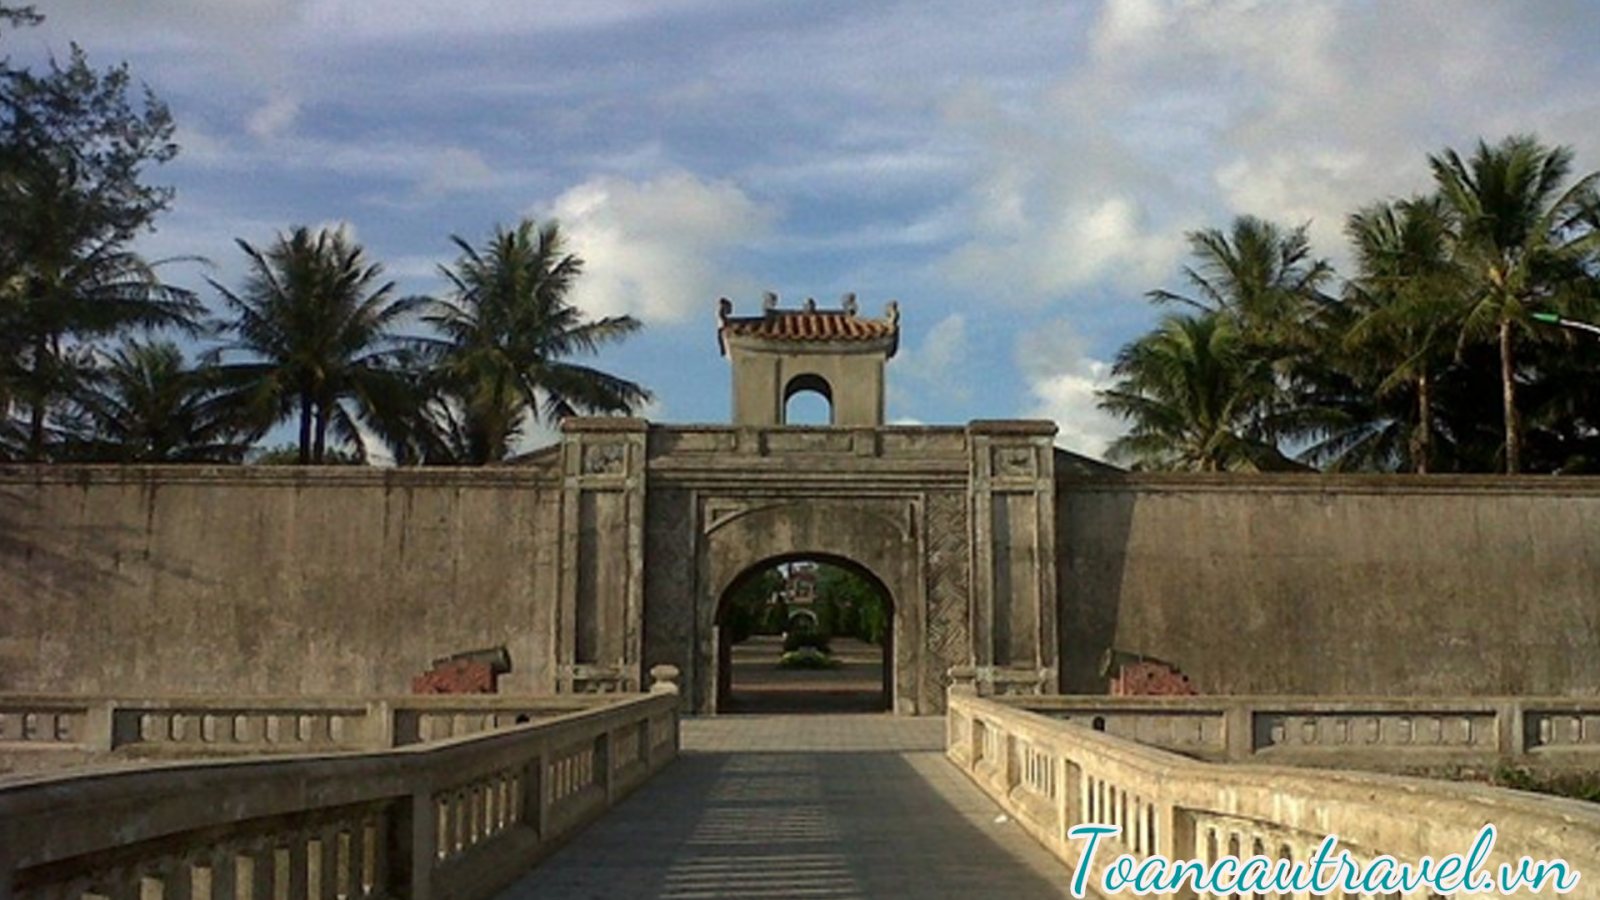 Thành cổ Quảng Trị - một di tích gắn liền với trận đánh lịch sử 81 ngày đêm bảo vệ Thành Cổ.